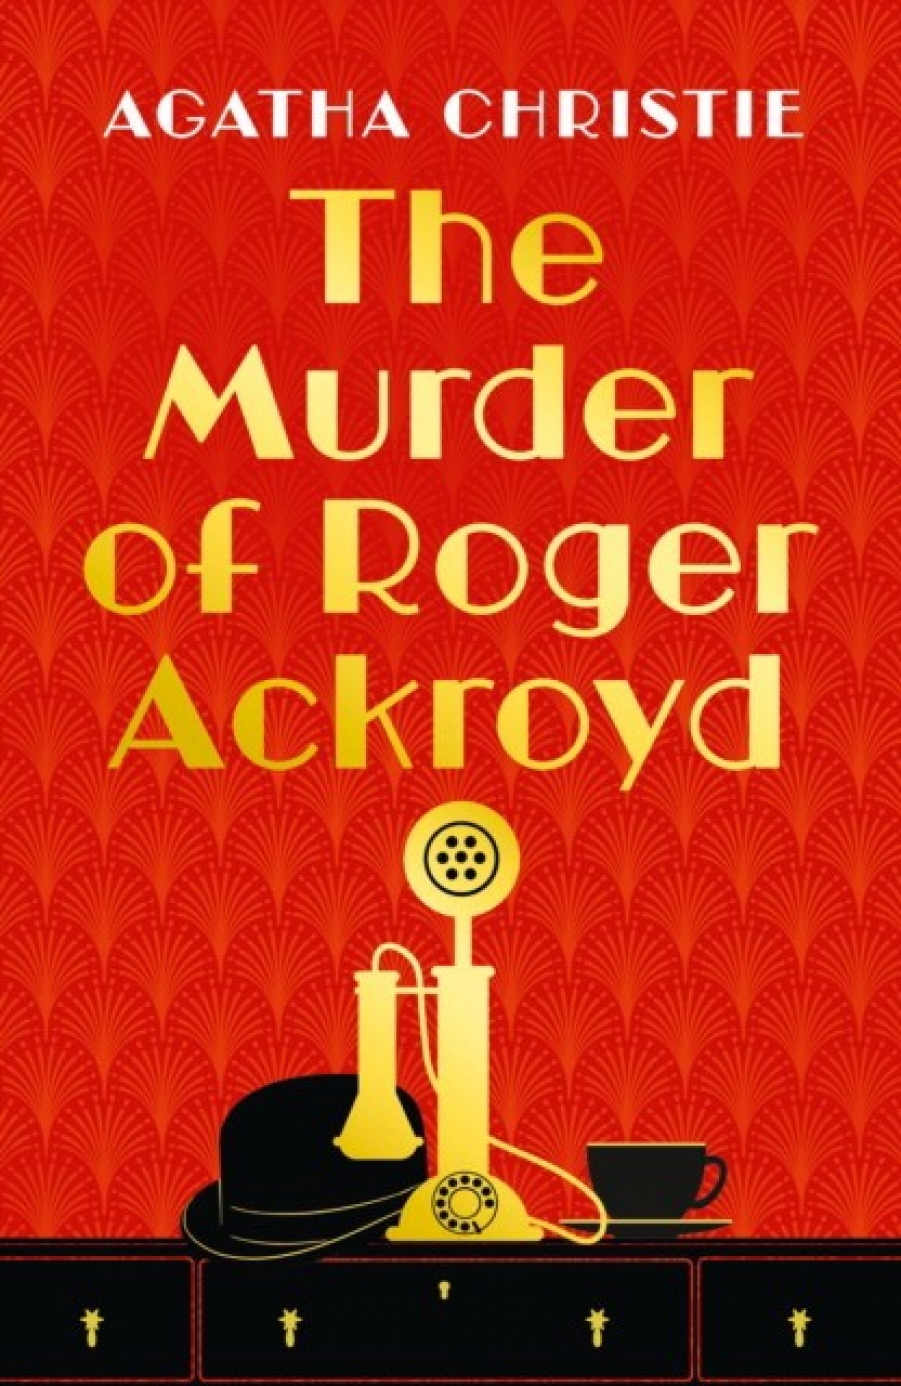 Christie Agatha Murder of roger ackroyd 